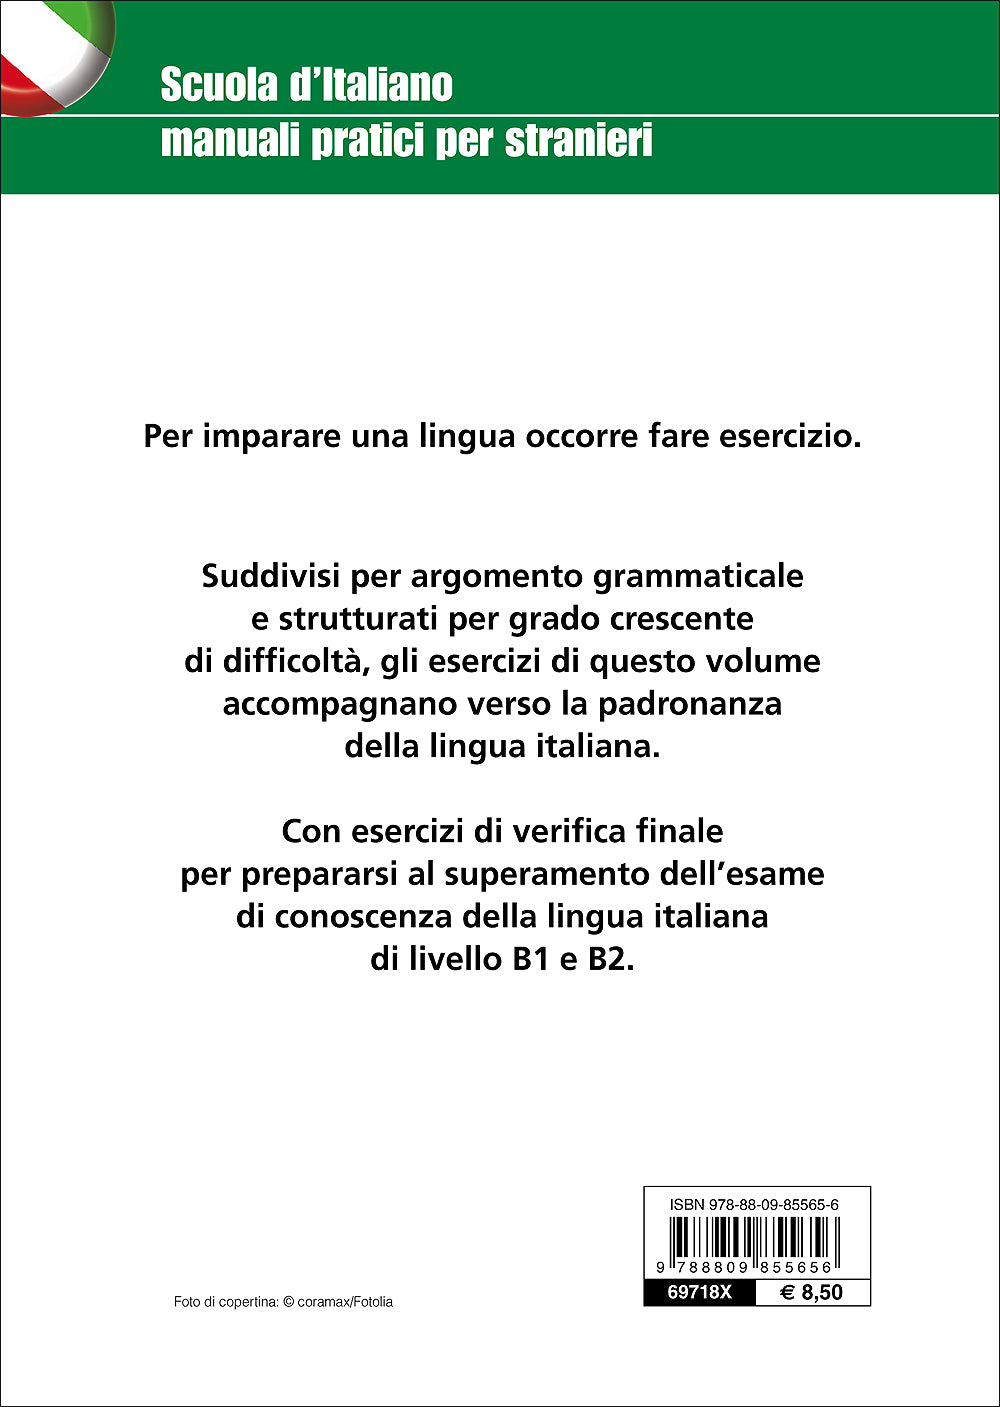 Esercizi di grammatica italiana per stranieri::La costruzione della frase - La coniugazione dei verbi - L'uso degli articoli - La punteggiatura - Le preposizioni - L'ortografia